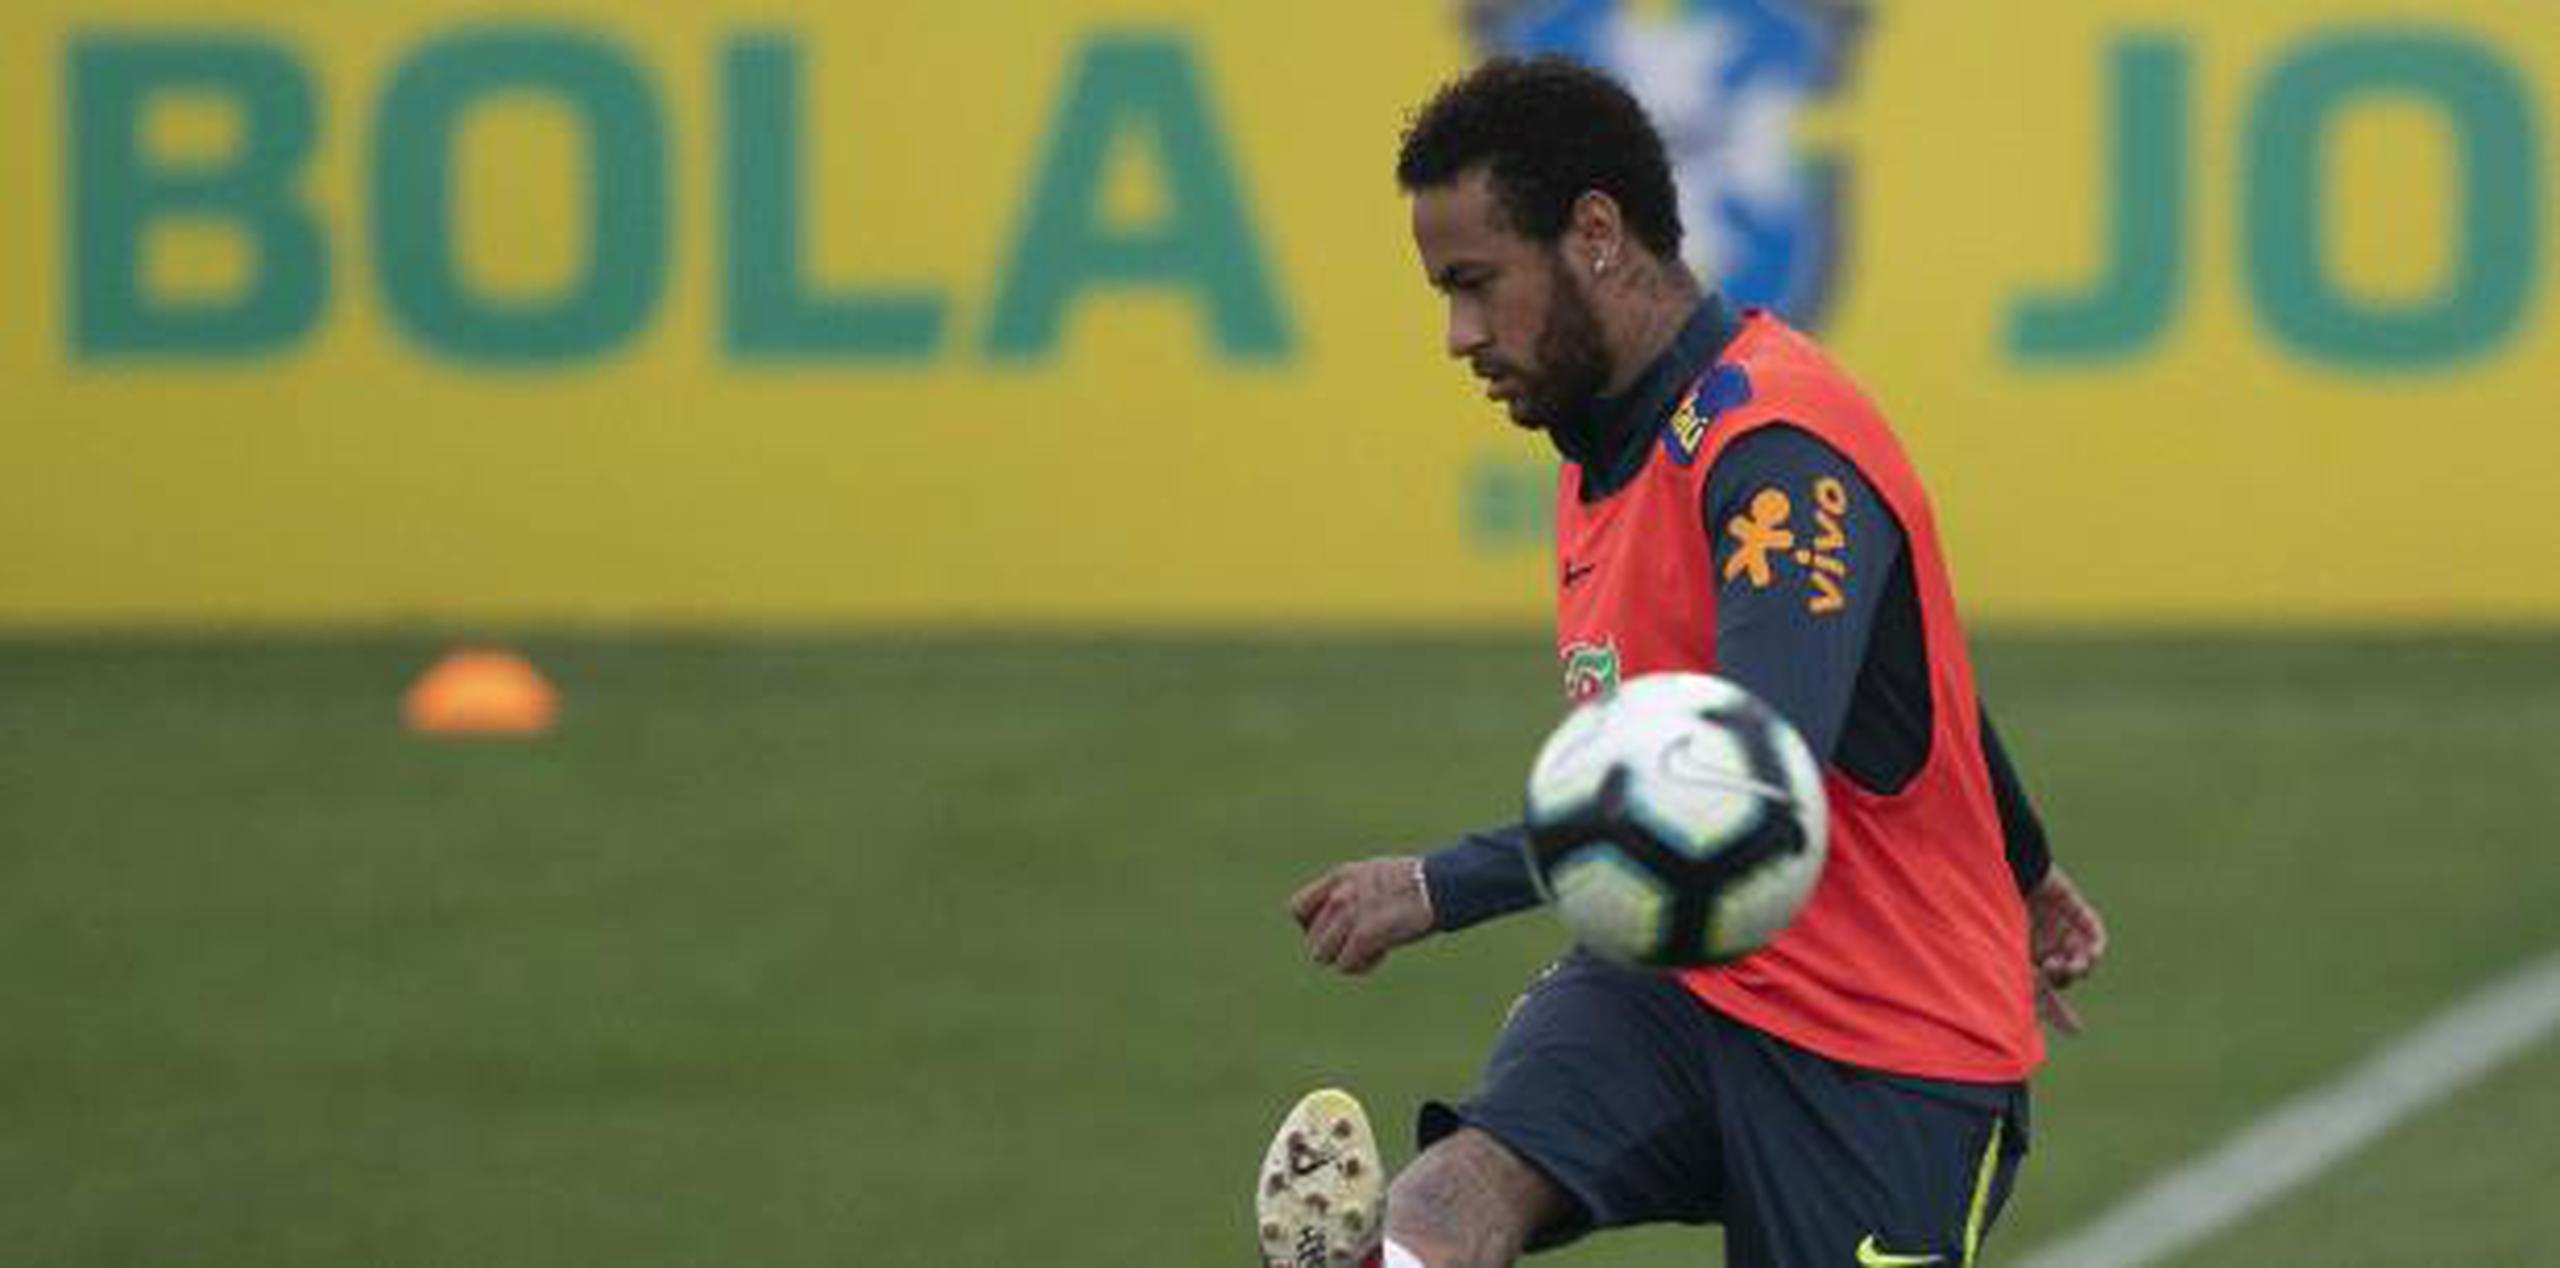 Neymar retiró el vídeo de sus redes sociales. (AP)

